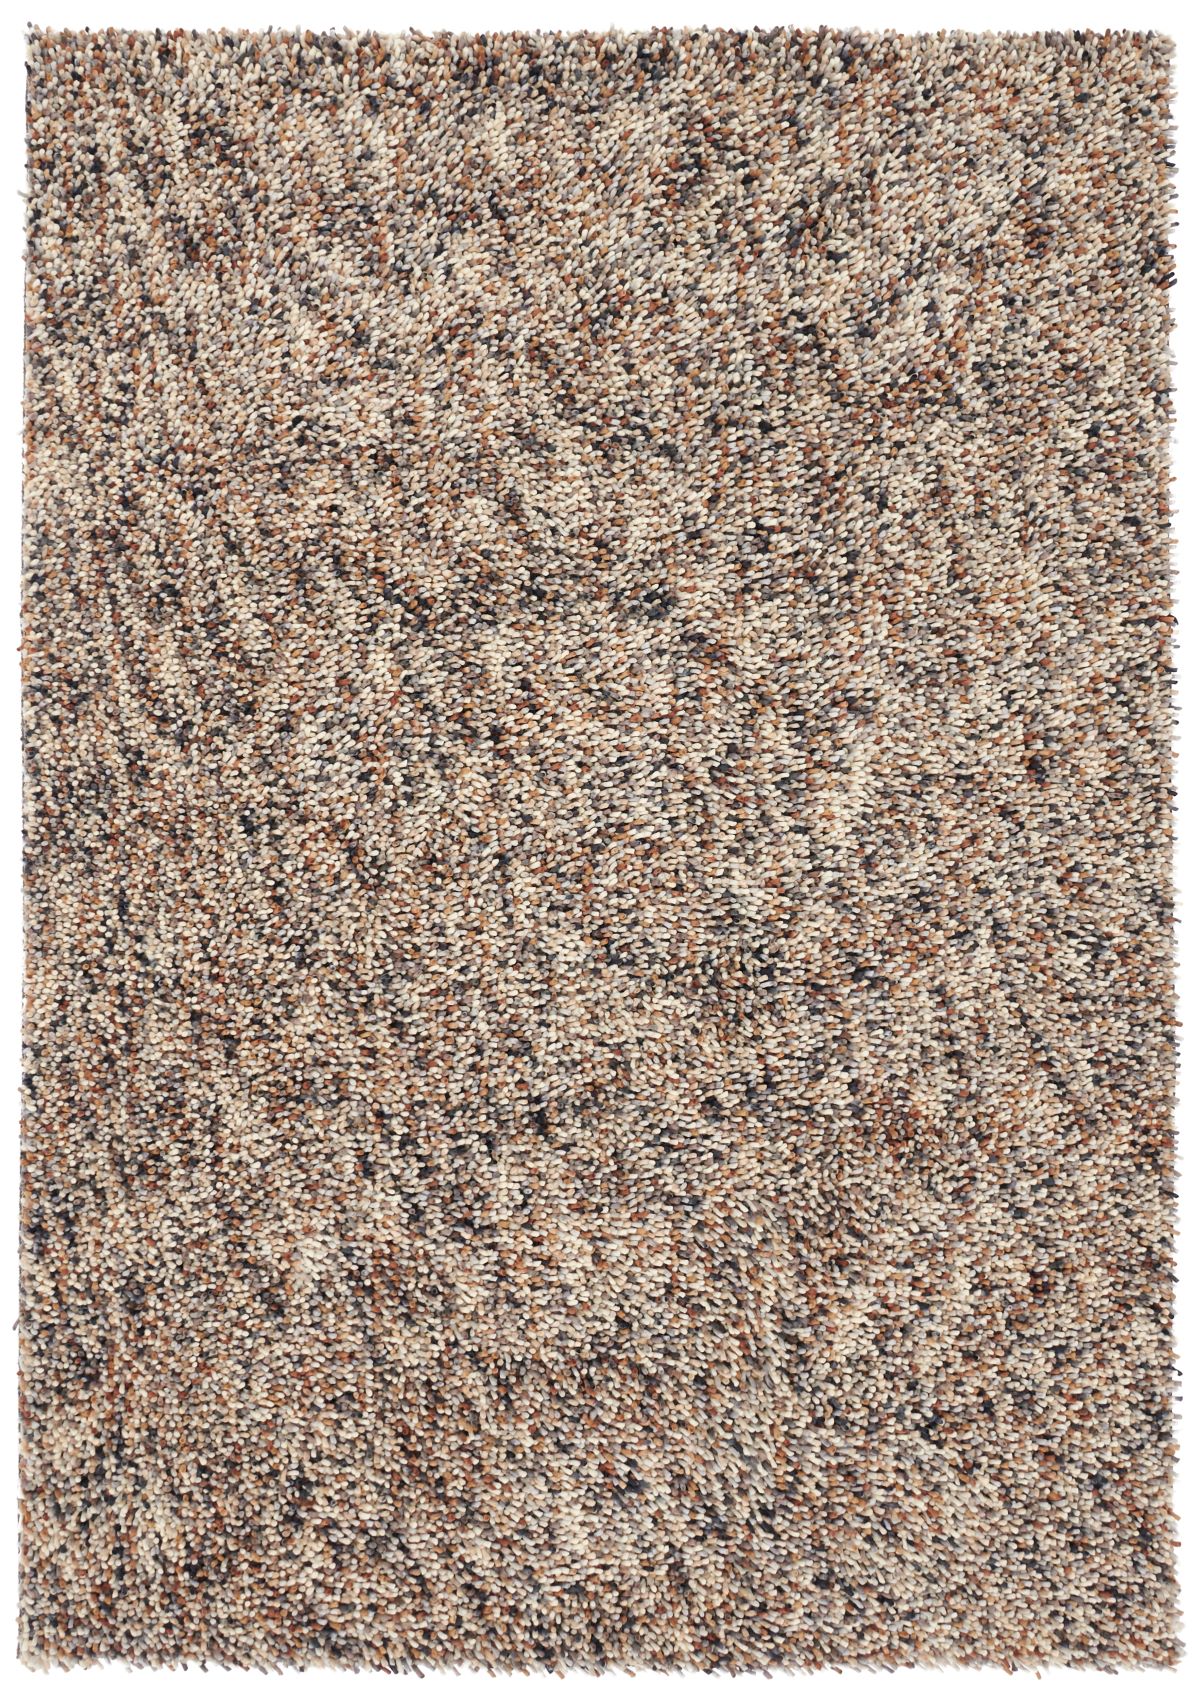 brink-and-campman-rug-dots-170401